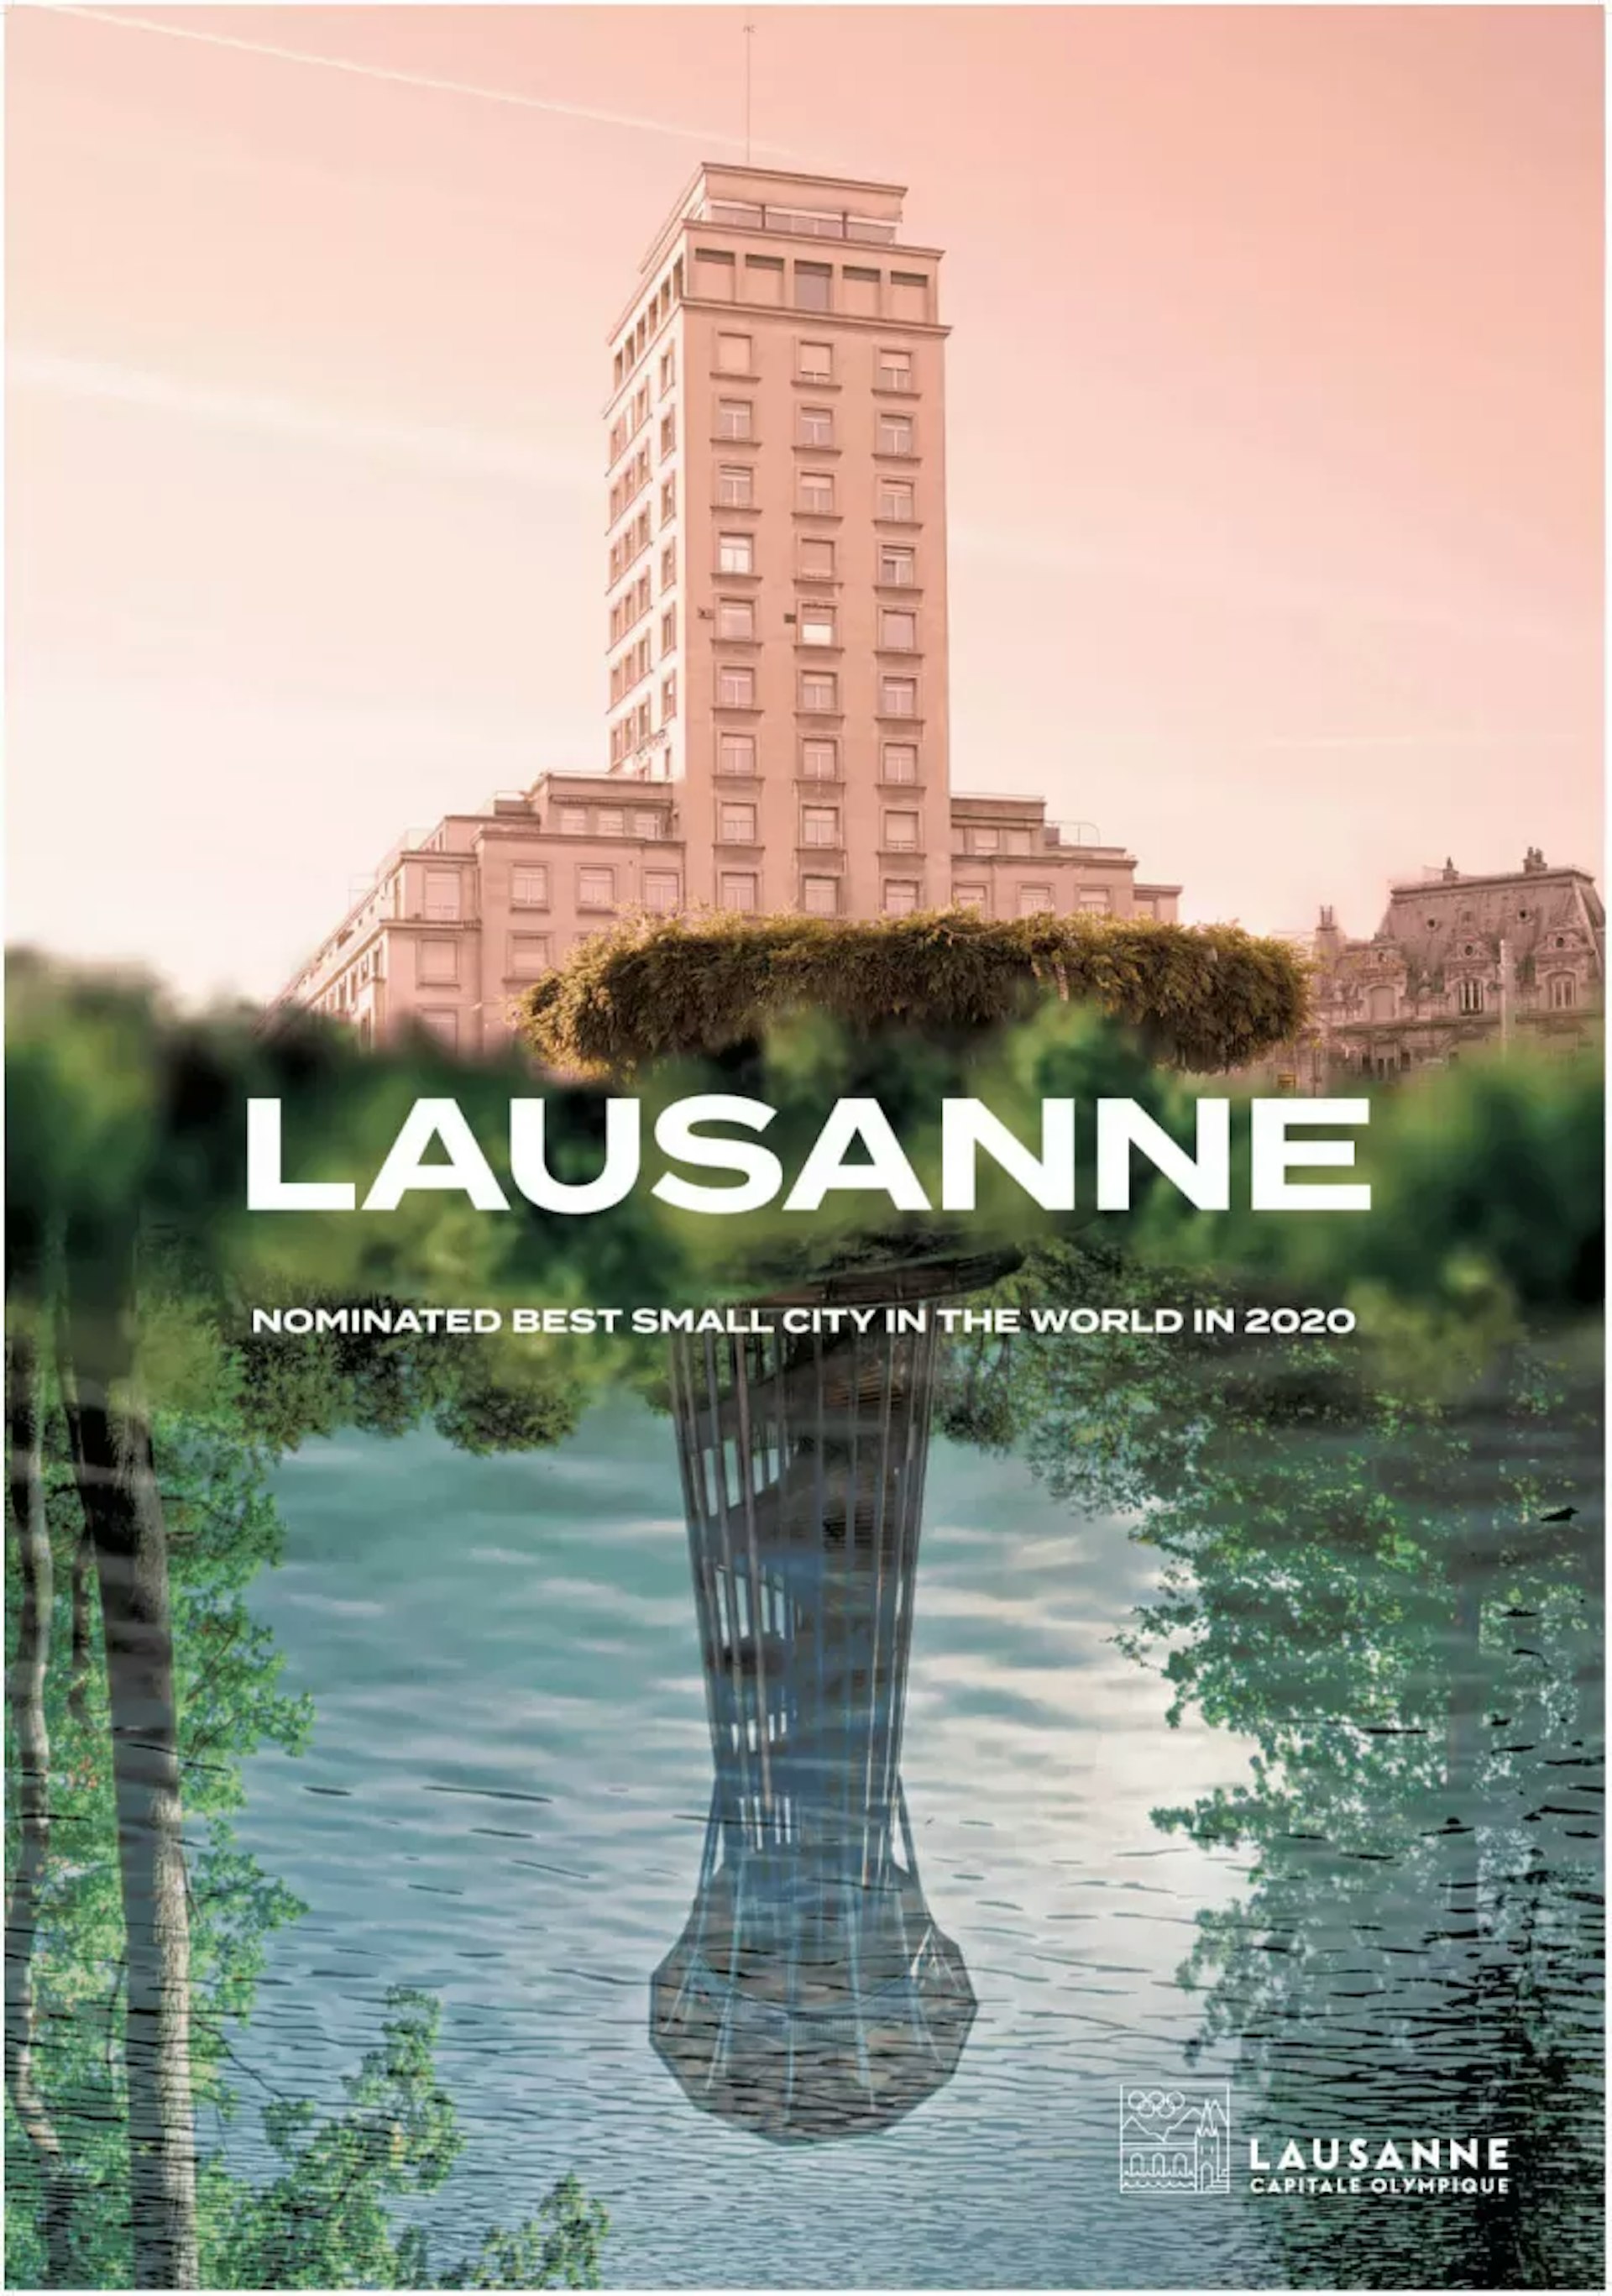 Affiche promotionnelle pour Lausanne, meilleure petite ville du monde